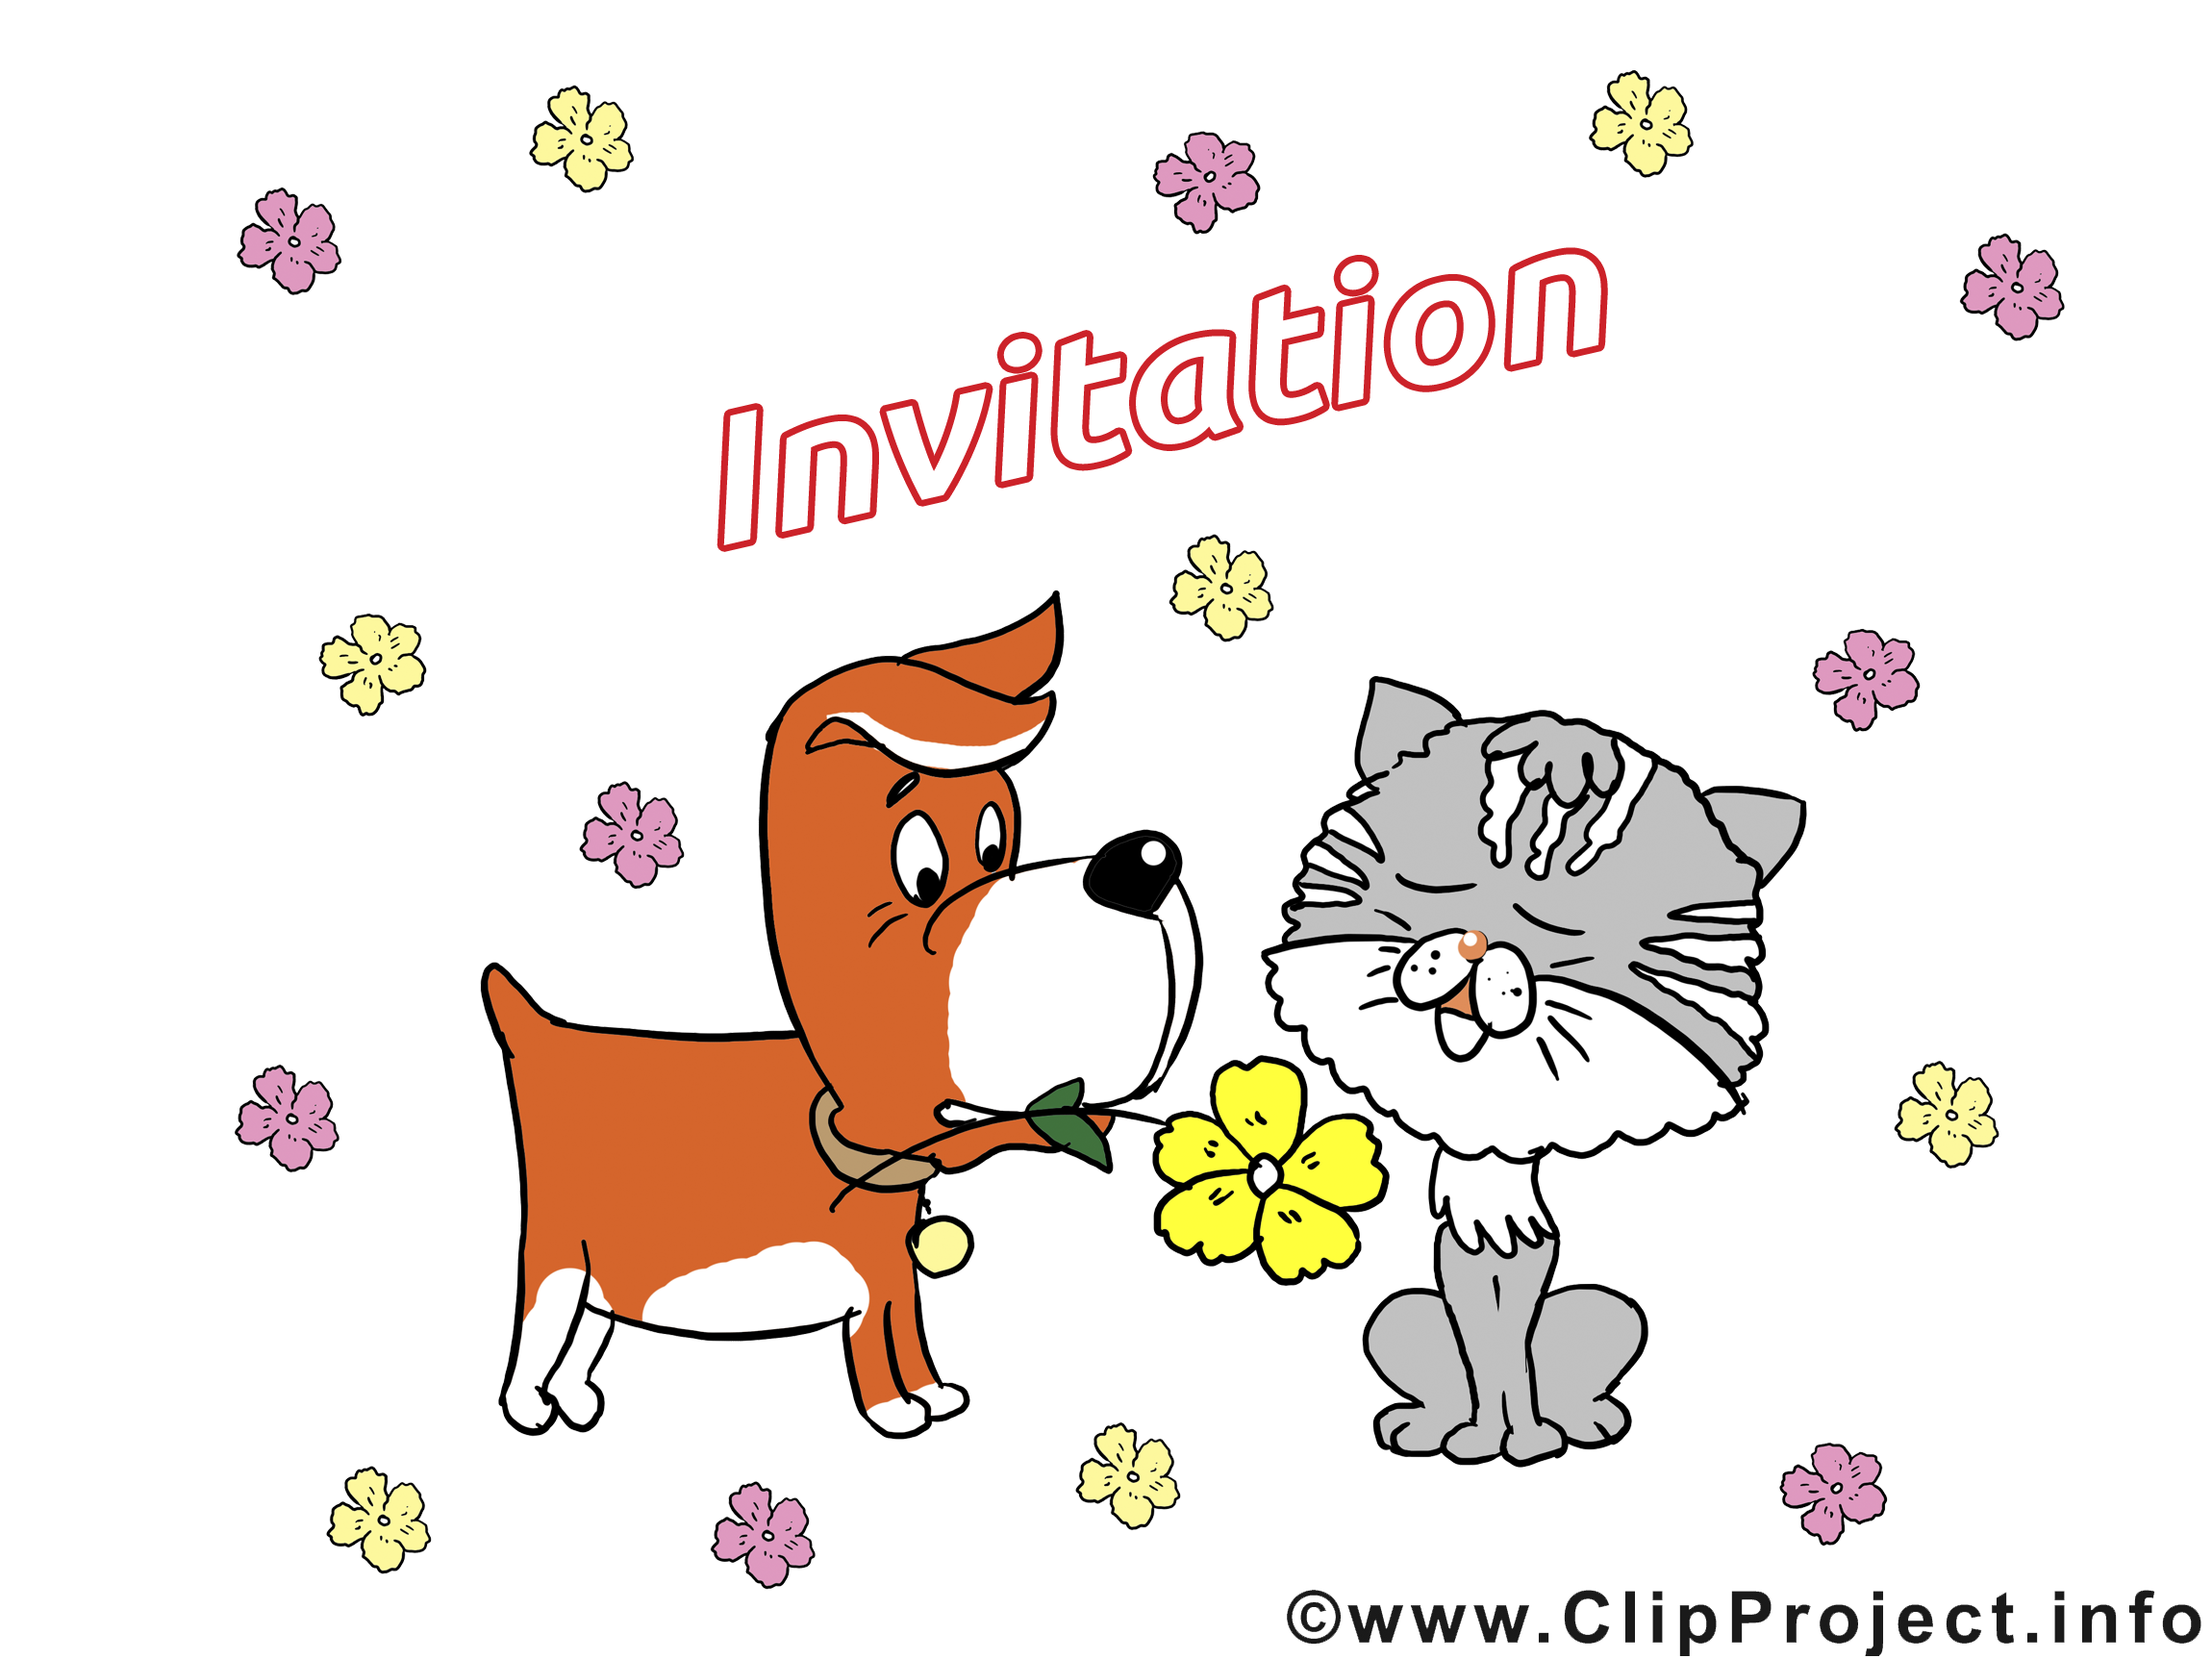 clipart invitation gratuit - photo #9